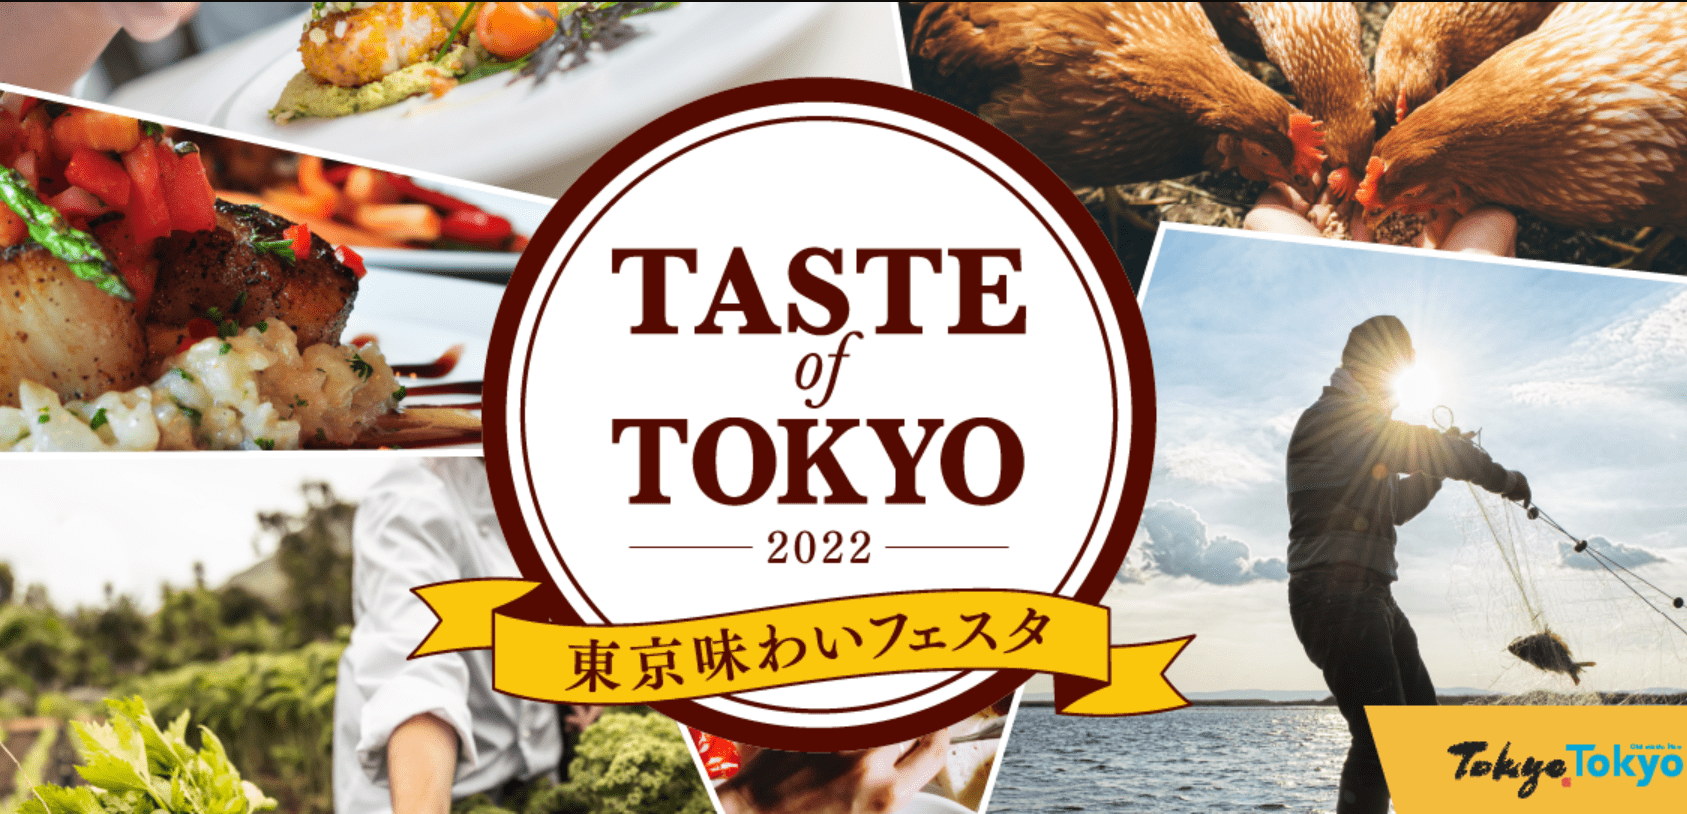 Taste of Tokyo 2022